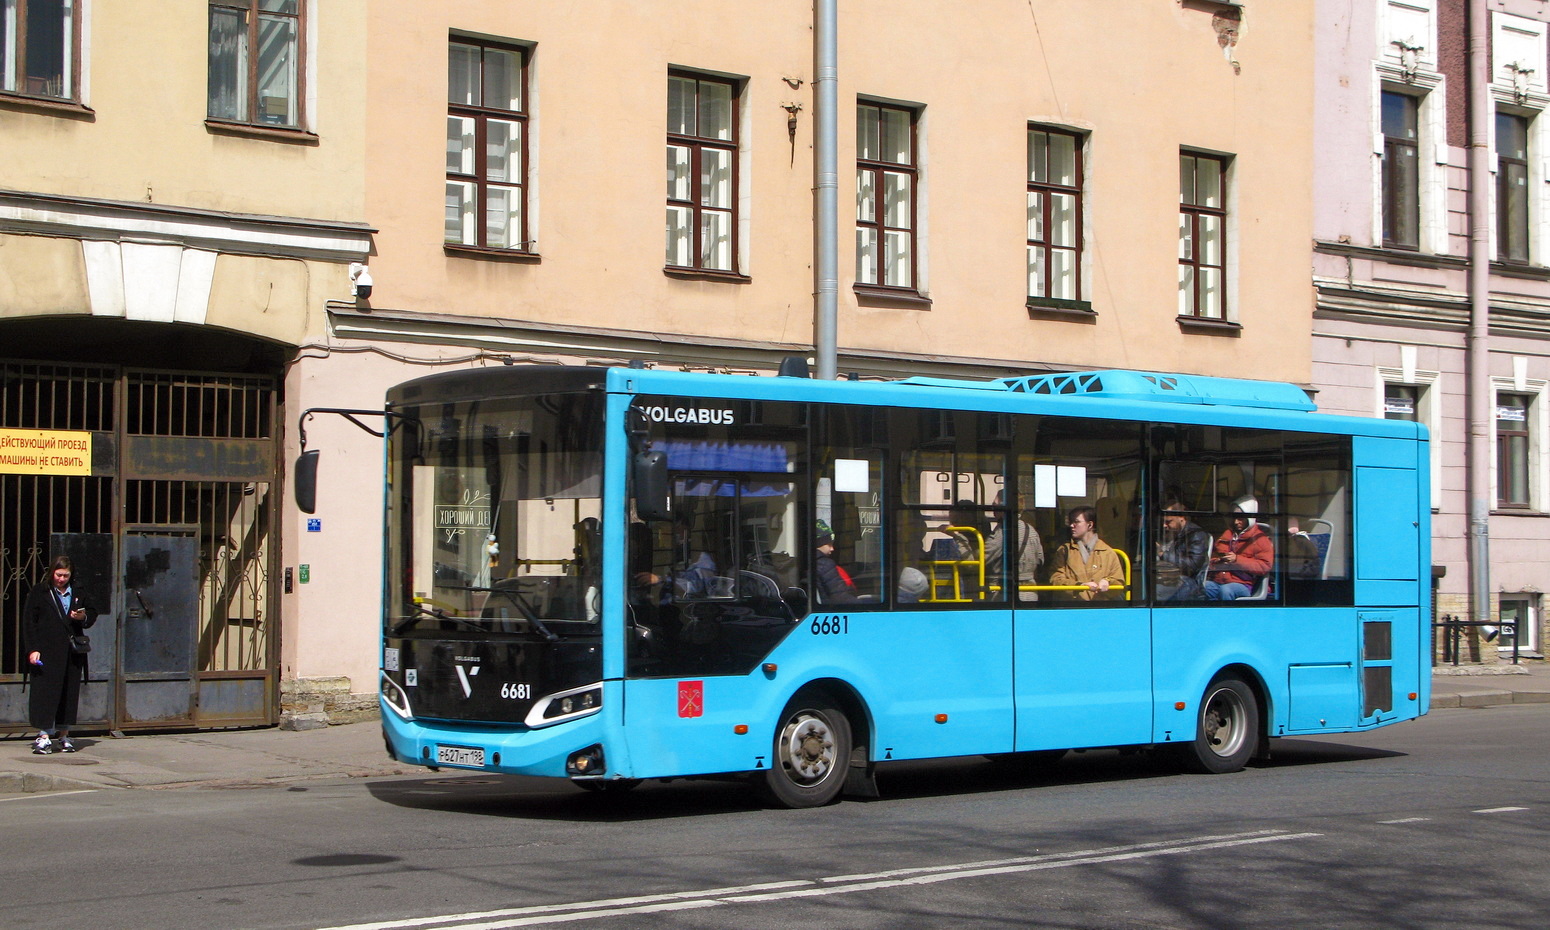 Sanktpēterburga, Volgabus-4298.G4 (LNG) № 6681